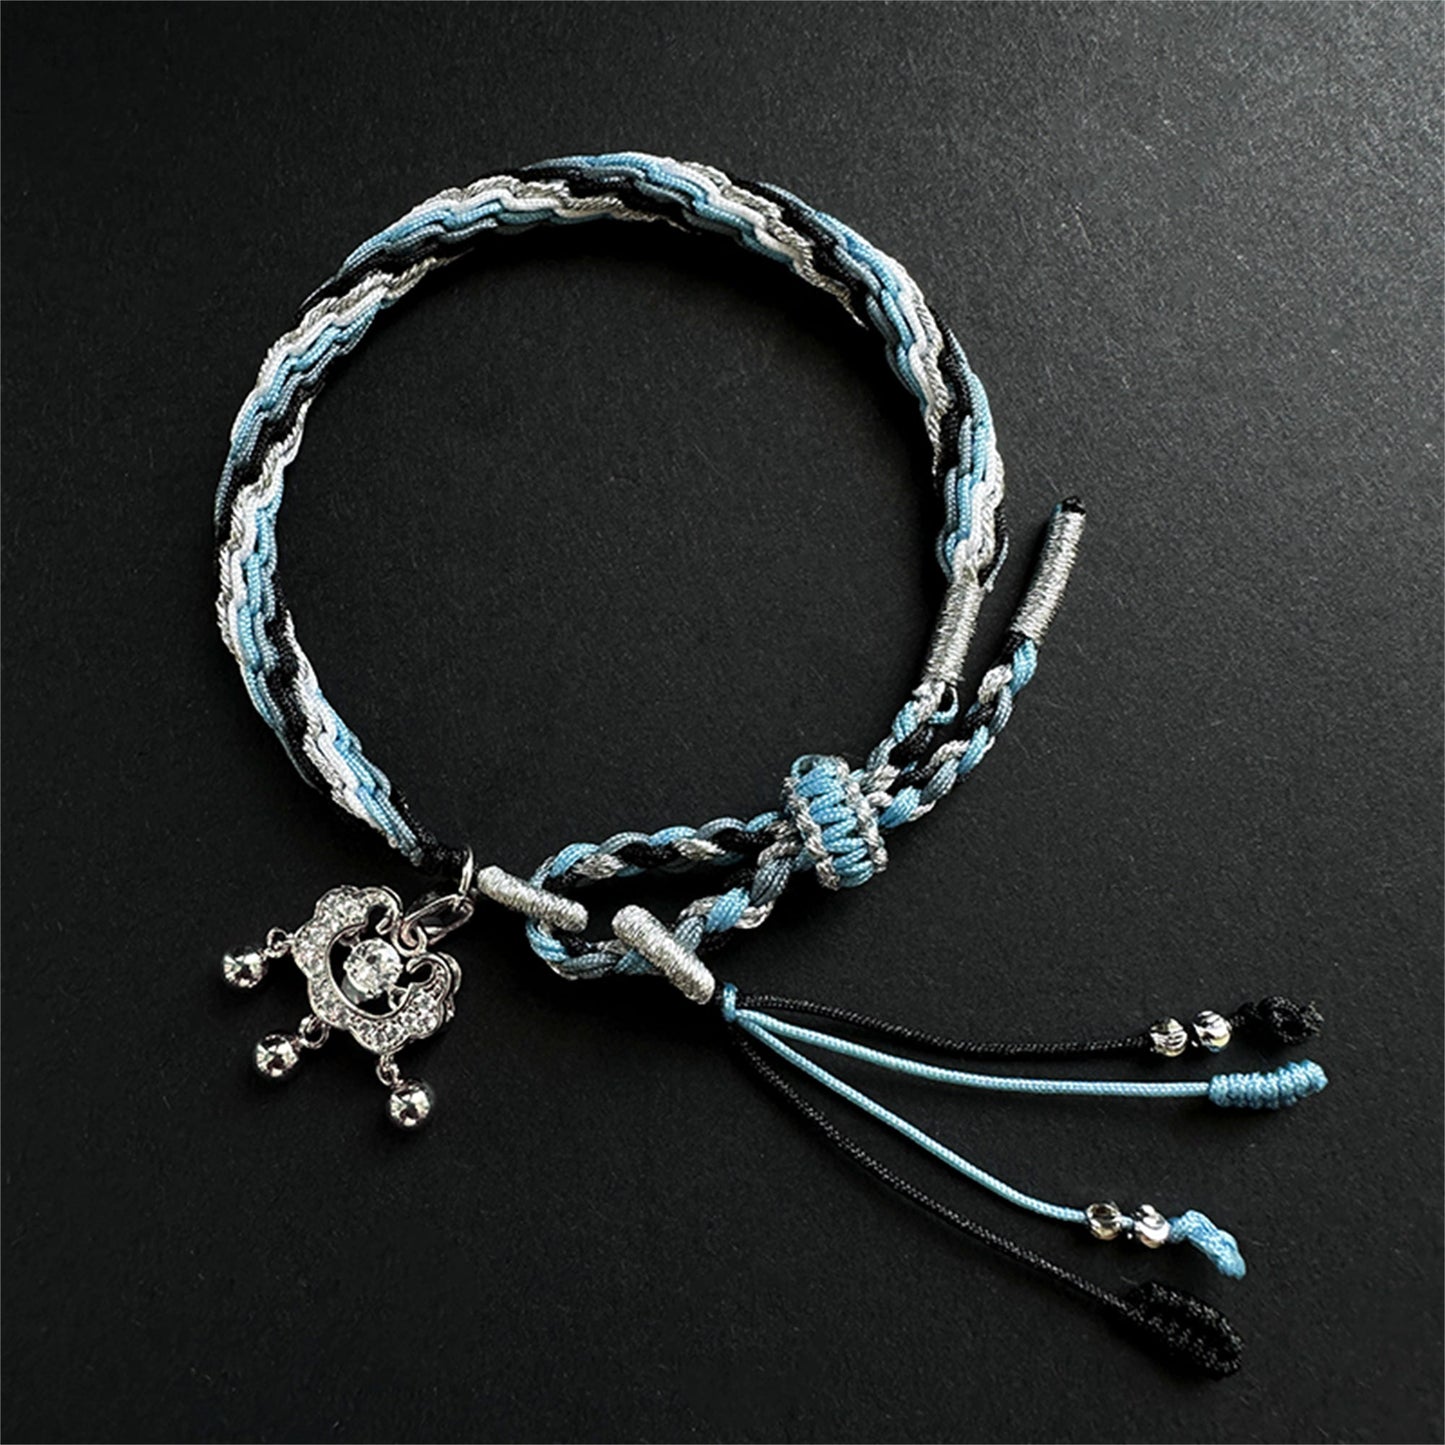 Honkai Star Rail Welt Bracelet Hand-Woven Bracelet